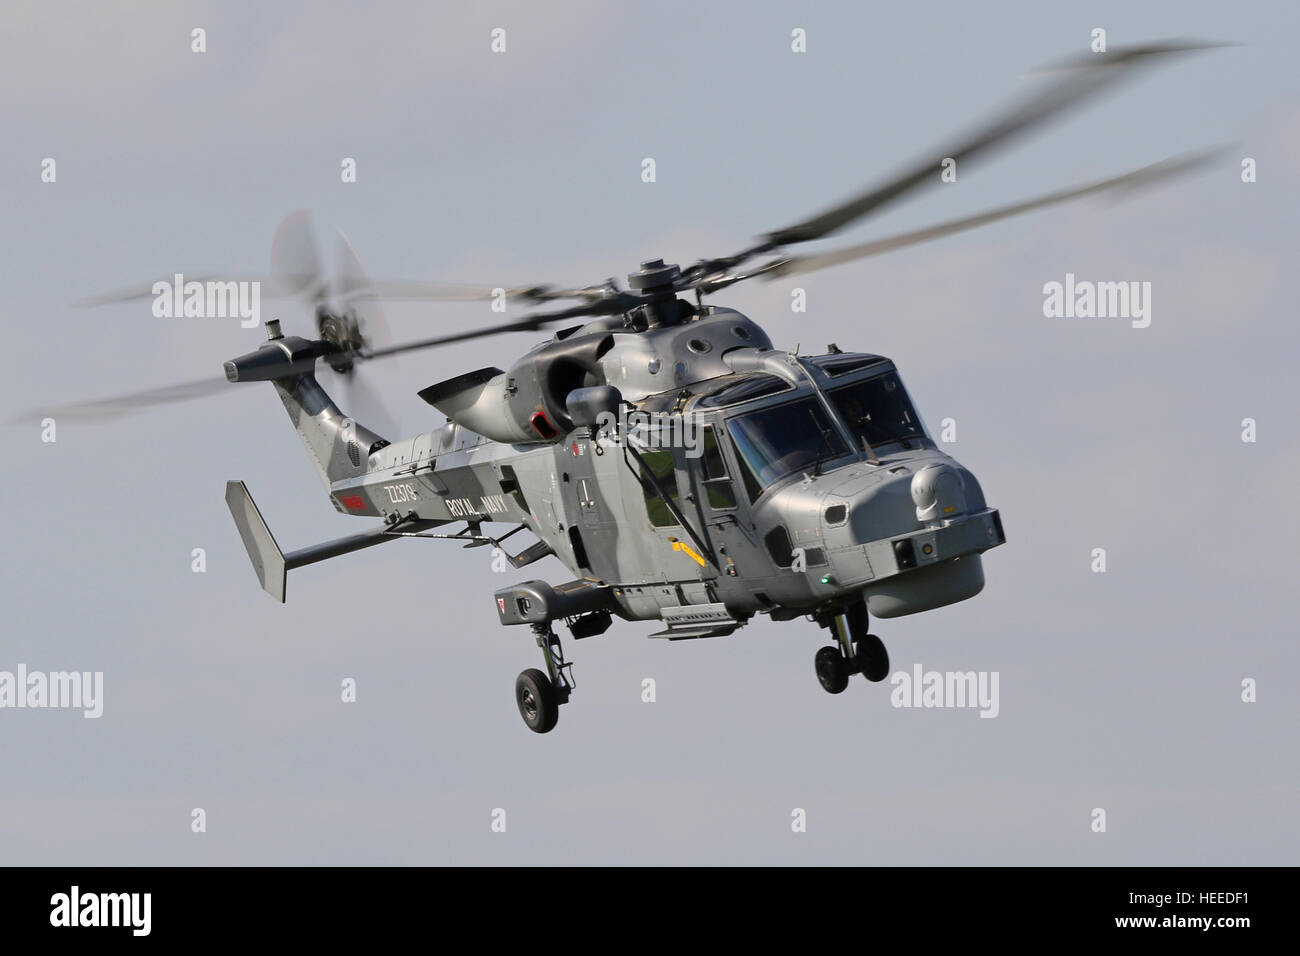 Aw159 lynx wildcat hma2 zz379 hélicoptère de la Royal Navy, le lynx lynx wildcat est le remplacement de l'hma8 rn en service. Banque D'Images